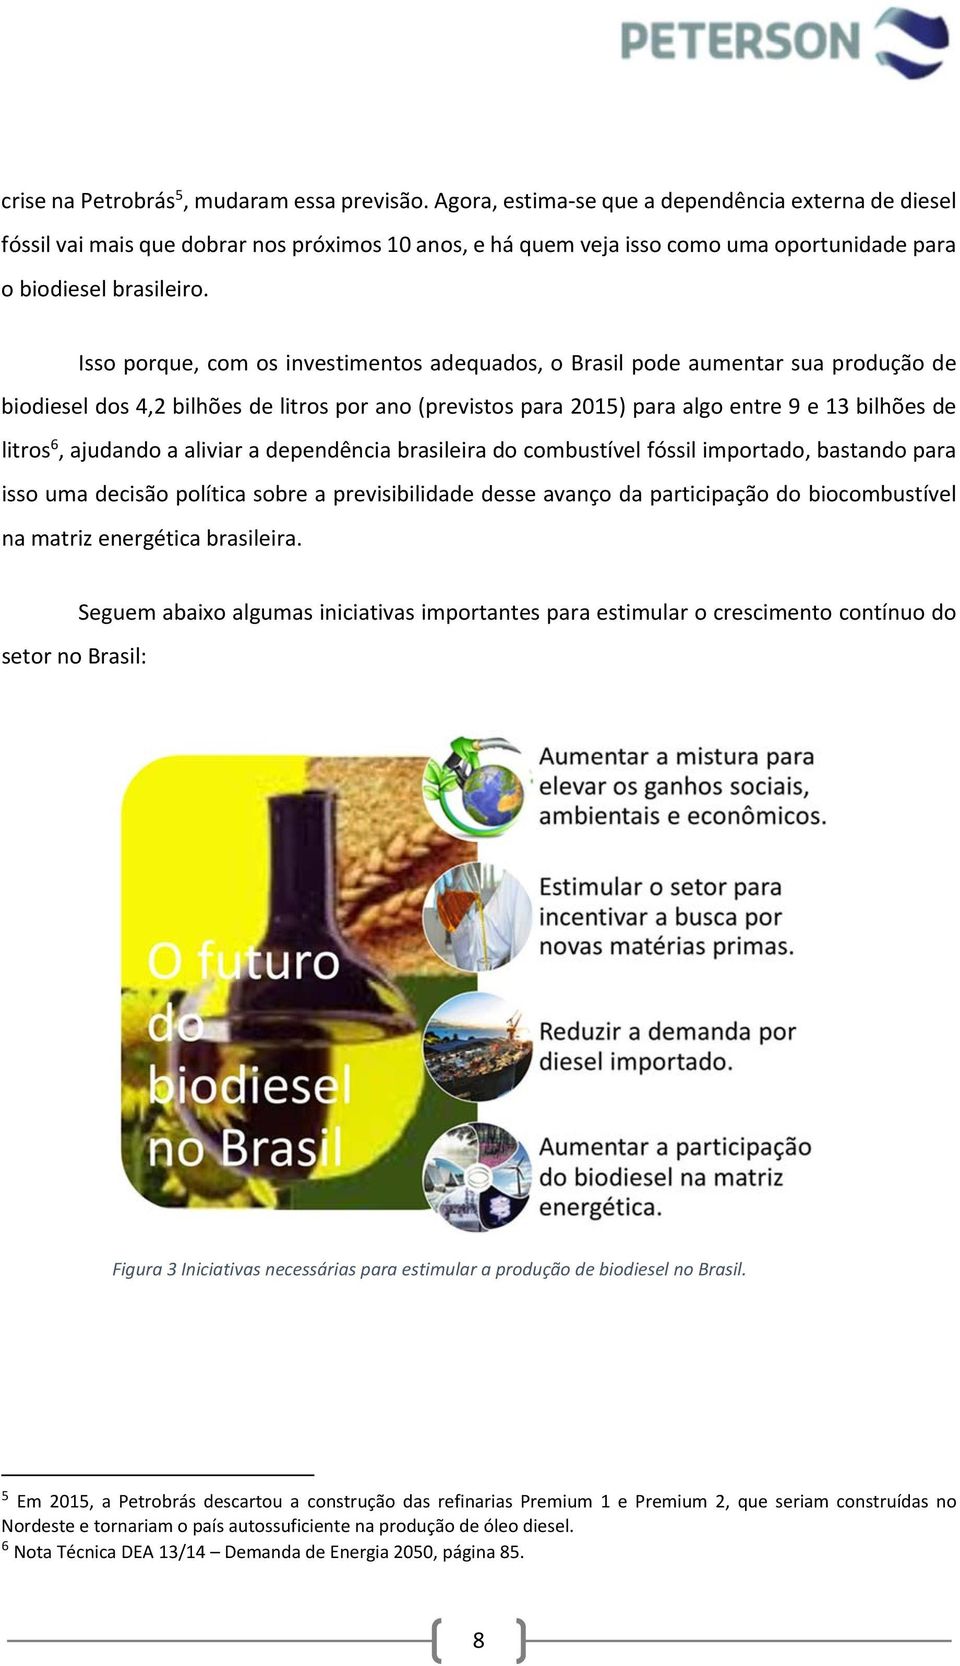 Isso porque, com os investimentos adequados, o Brasil pode aumentar sua produção de biodiesel dos 4,2 bilhões de litros por ano (previstos para 2015) para algo entre 9 e 13 bilhões de litros 6,